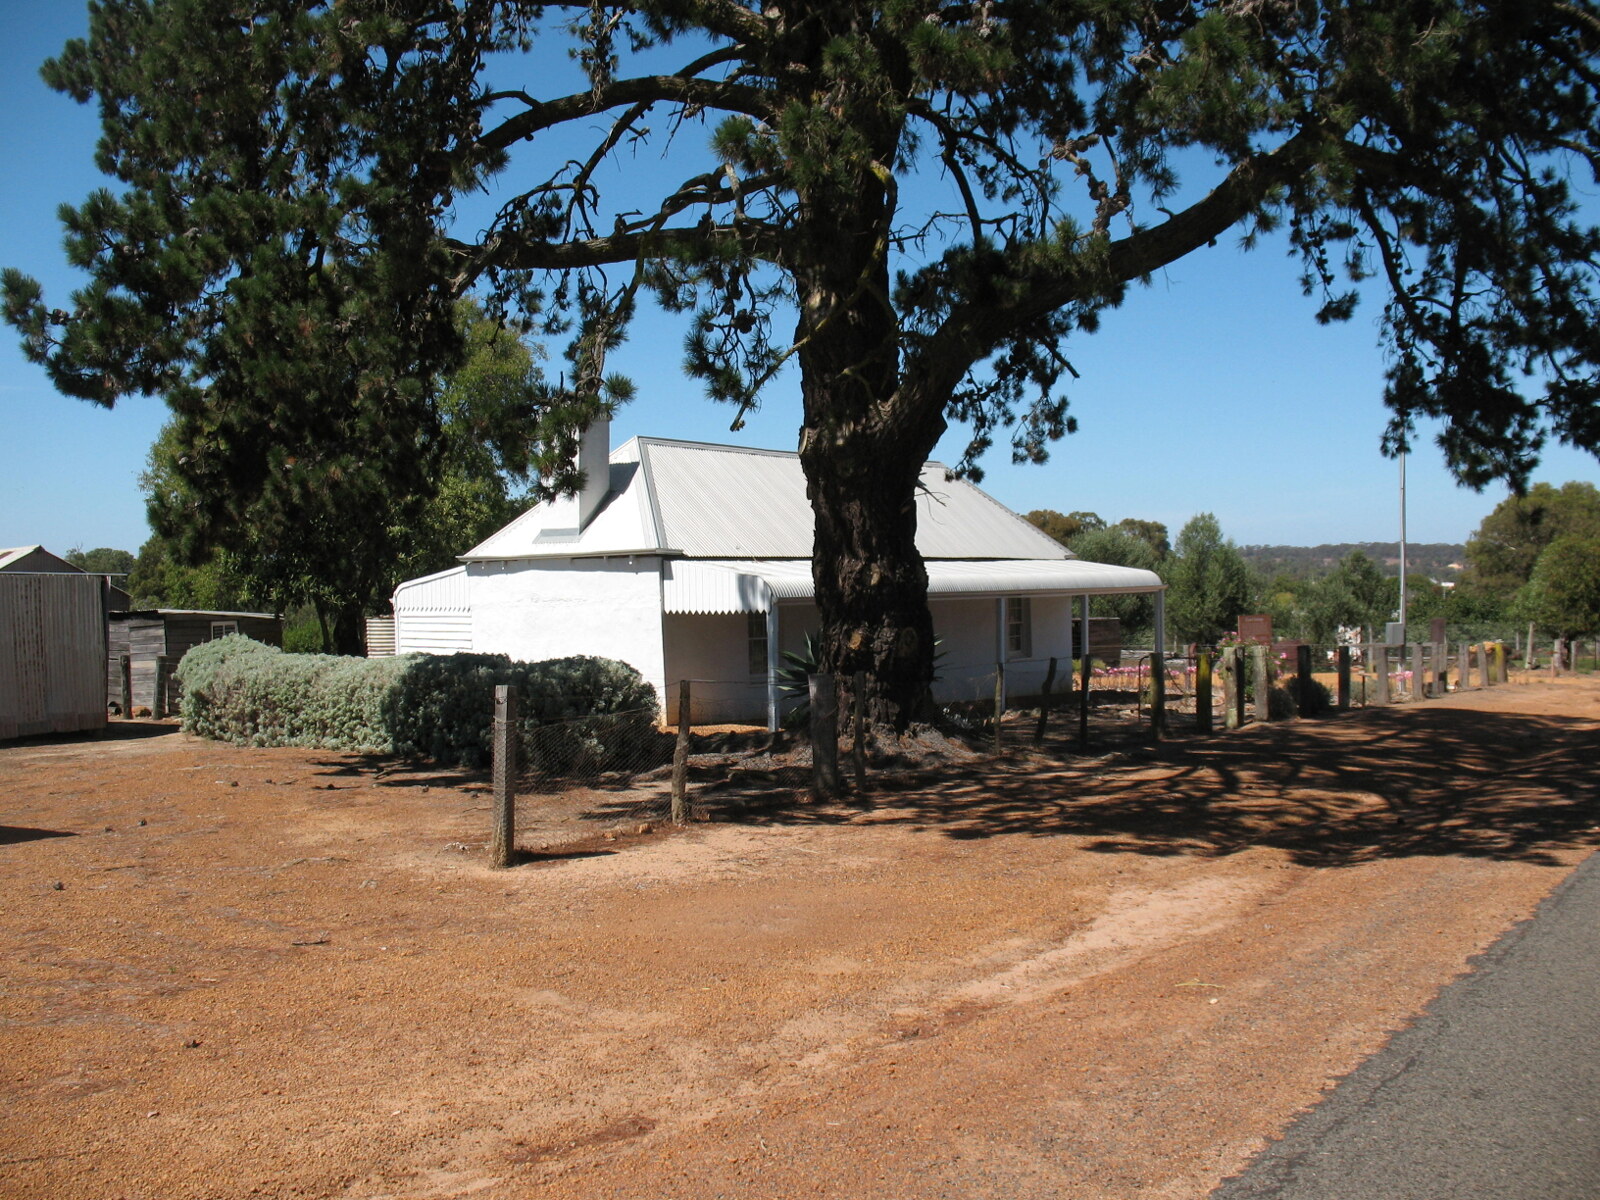 Historic homestead near Kojonup Western Australia